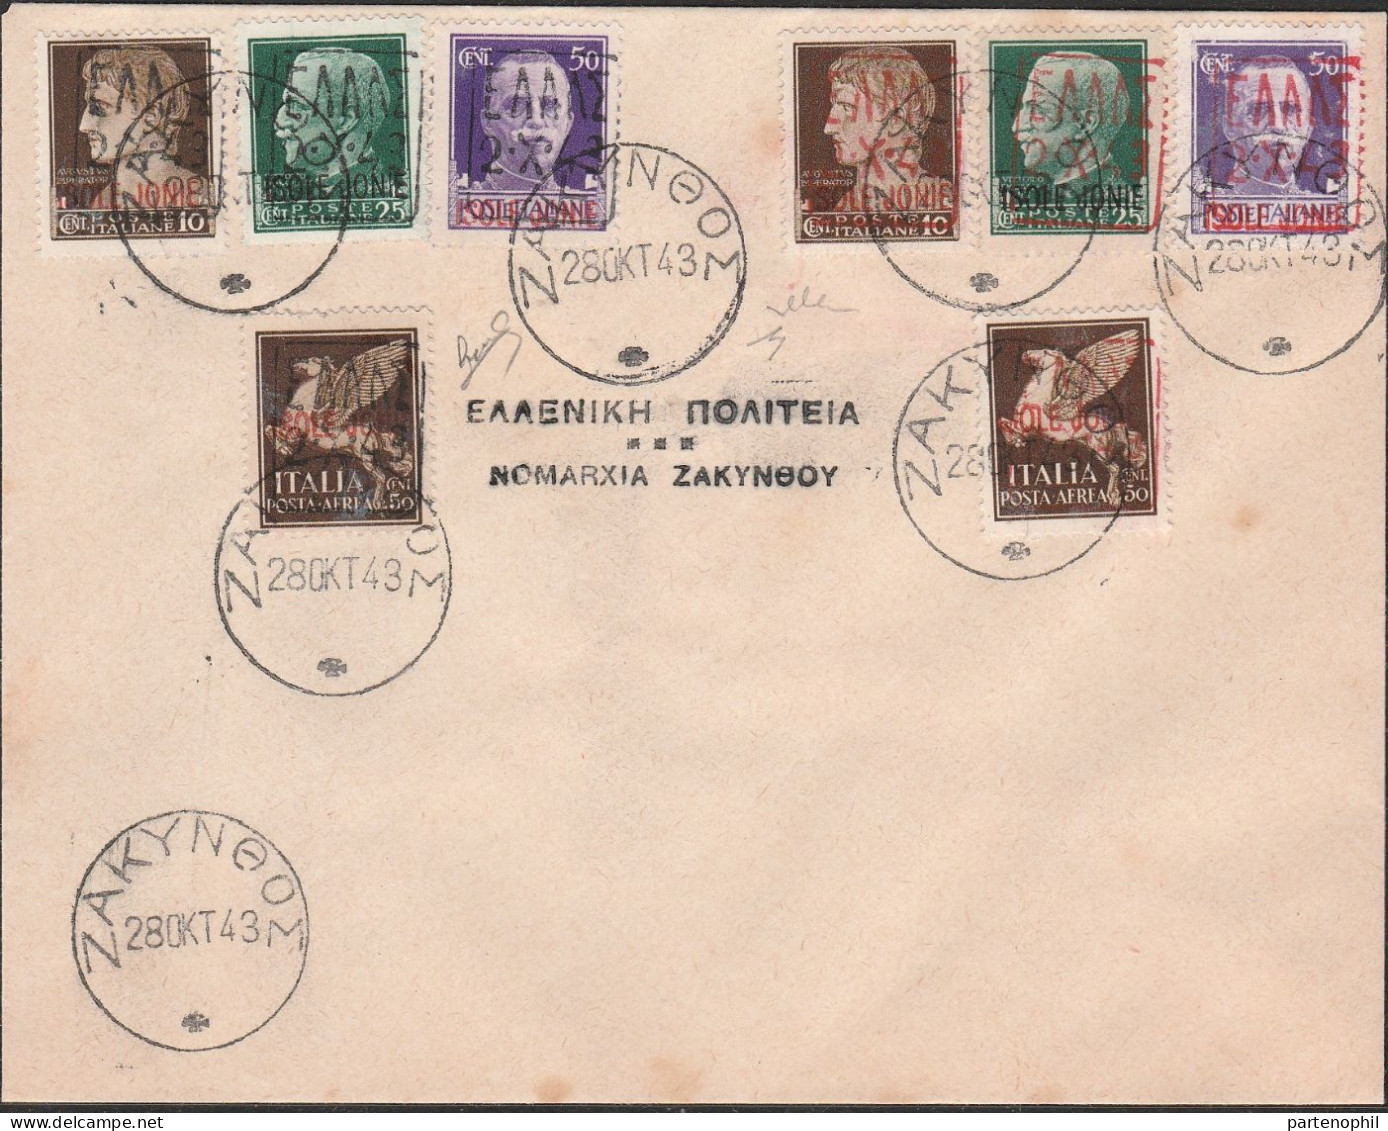 Lotto 282 Zante - Amministrazione Civile Greca 28/10/1943 - Lettera Filatelica Non Indirizzata Ed Affrancata Con L’emiss - Zante